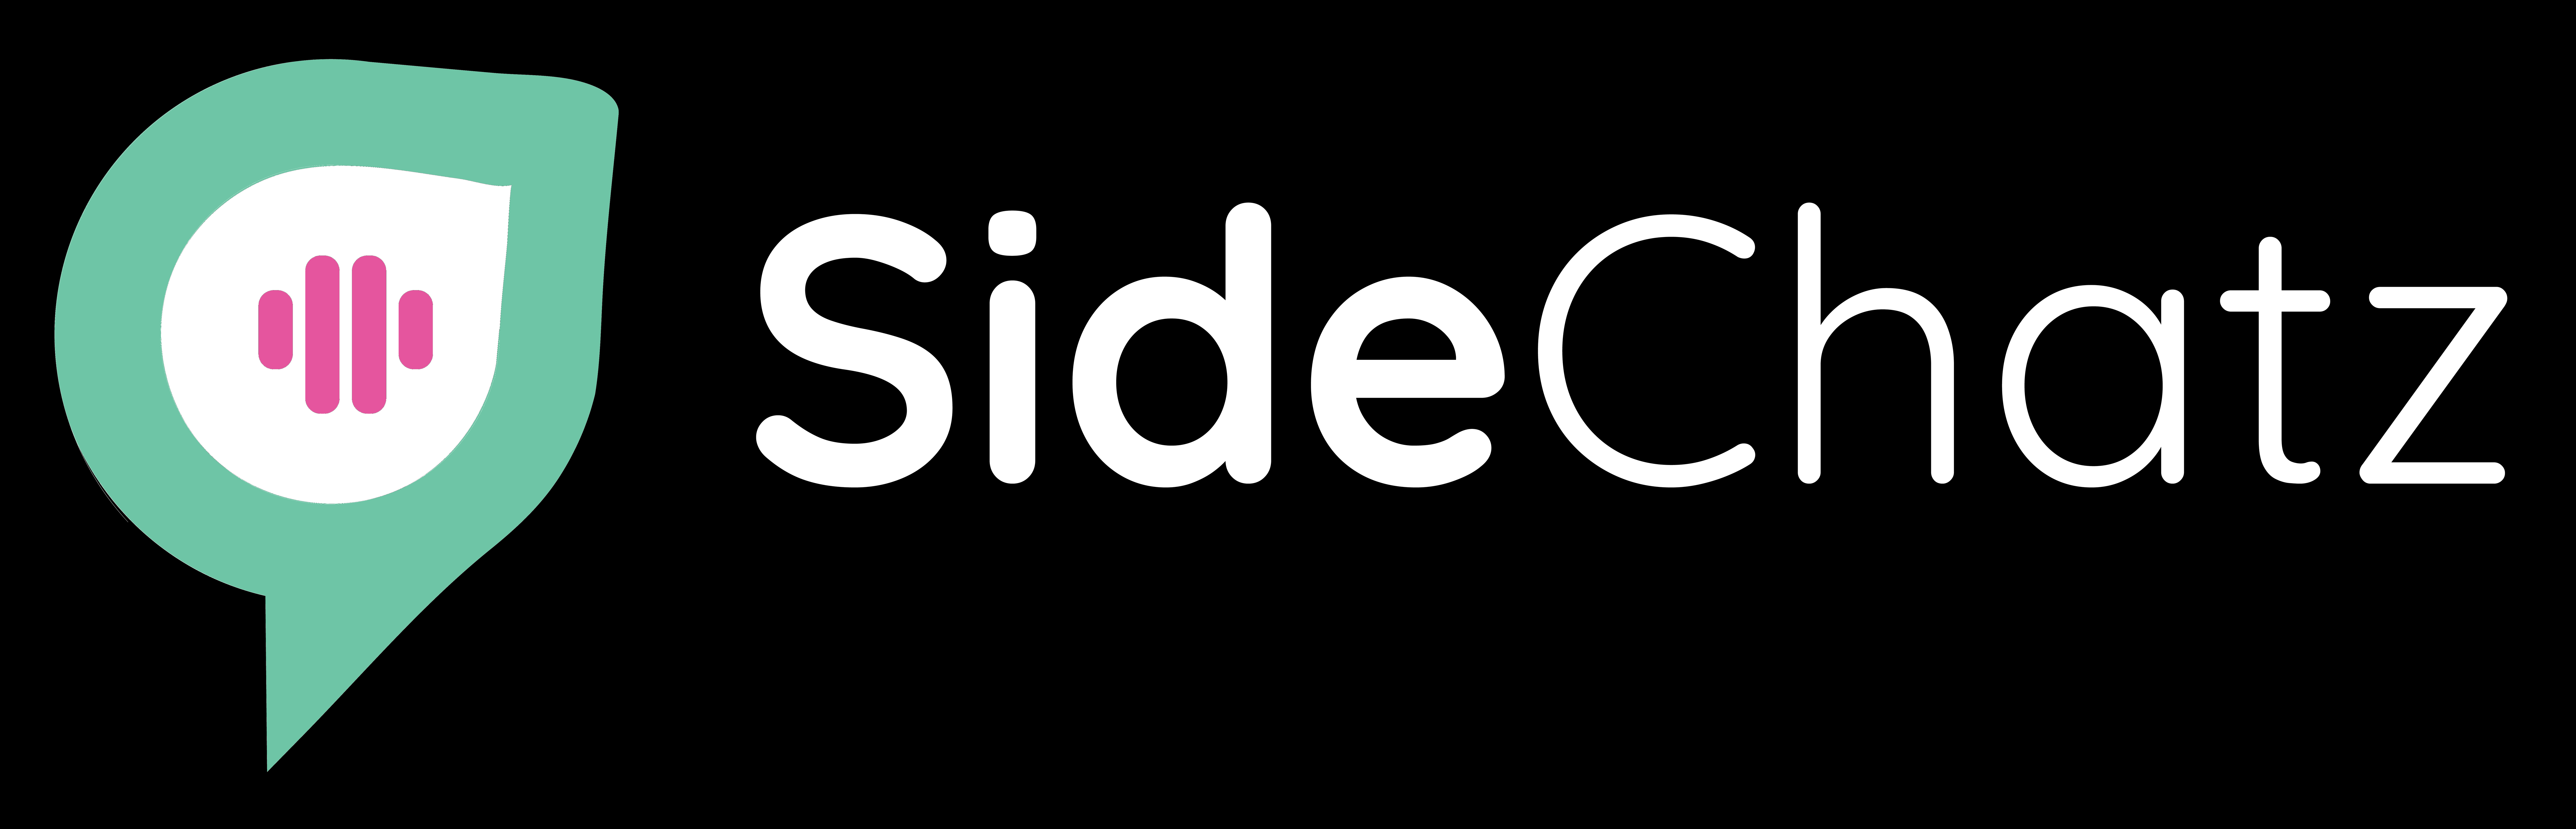 Sidechatz logo